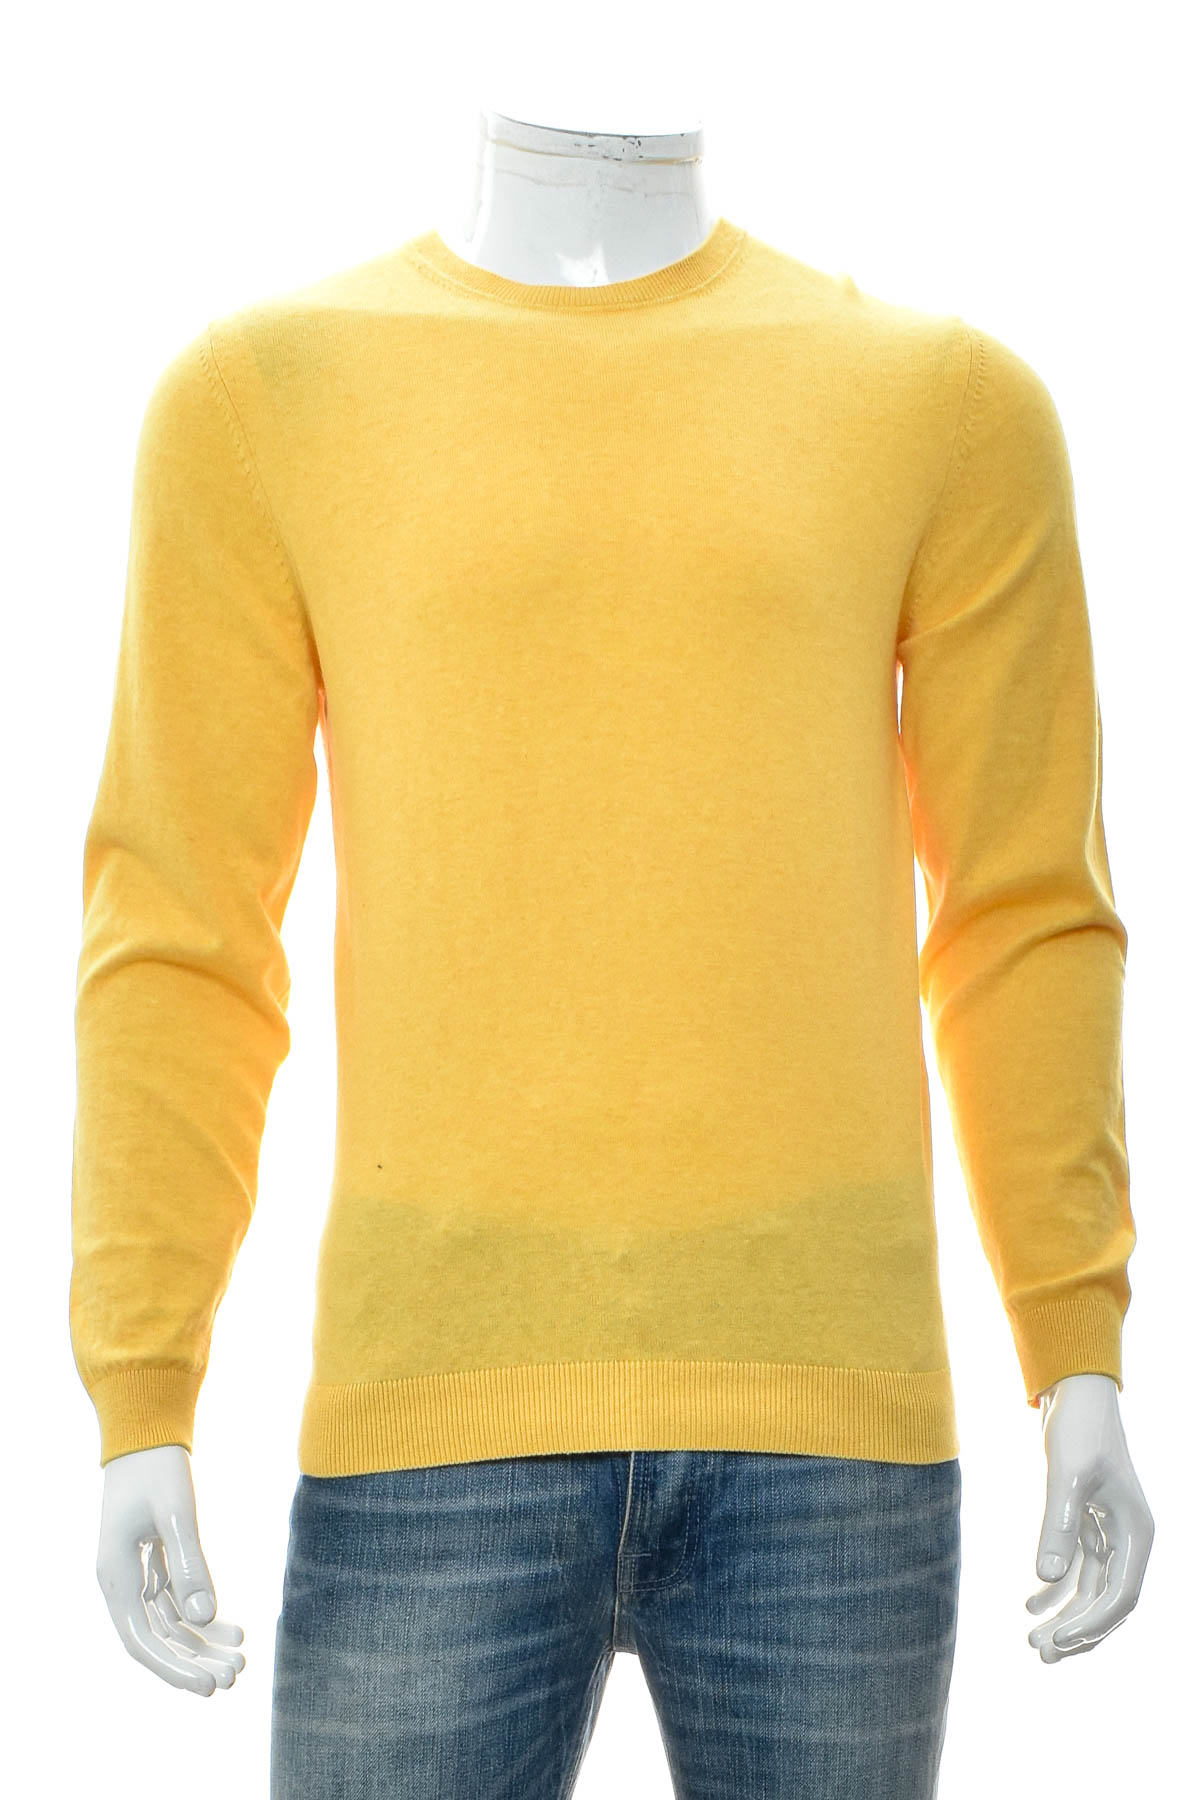 Men's sweater - Johann Konen - 0